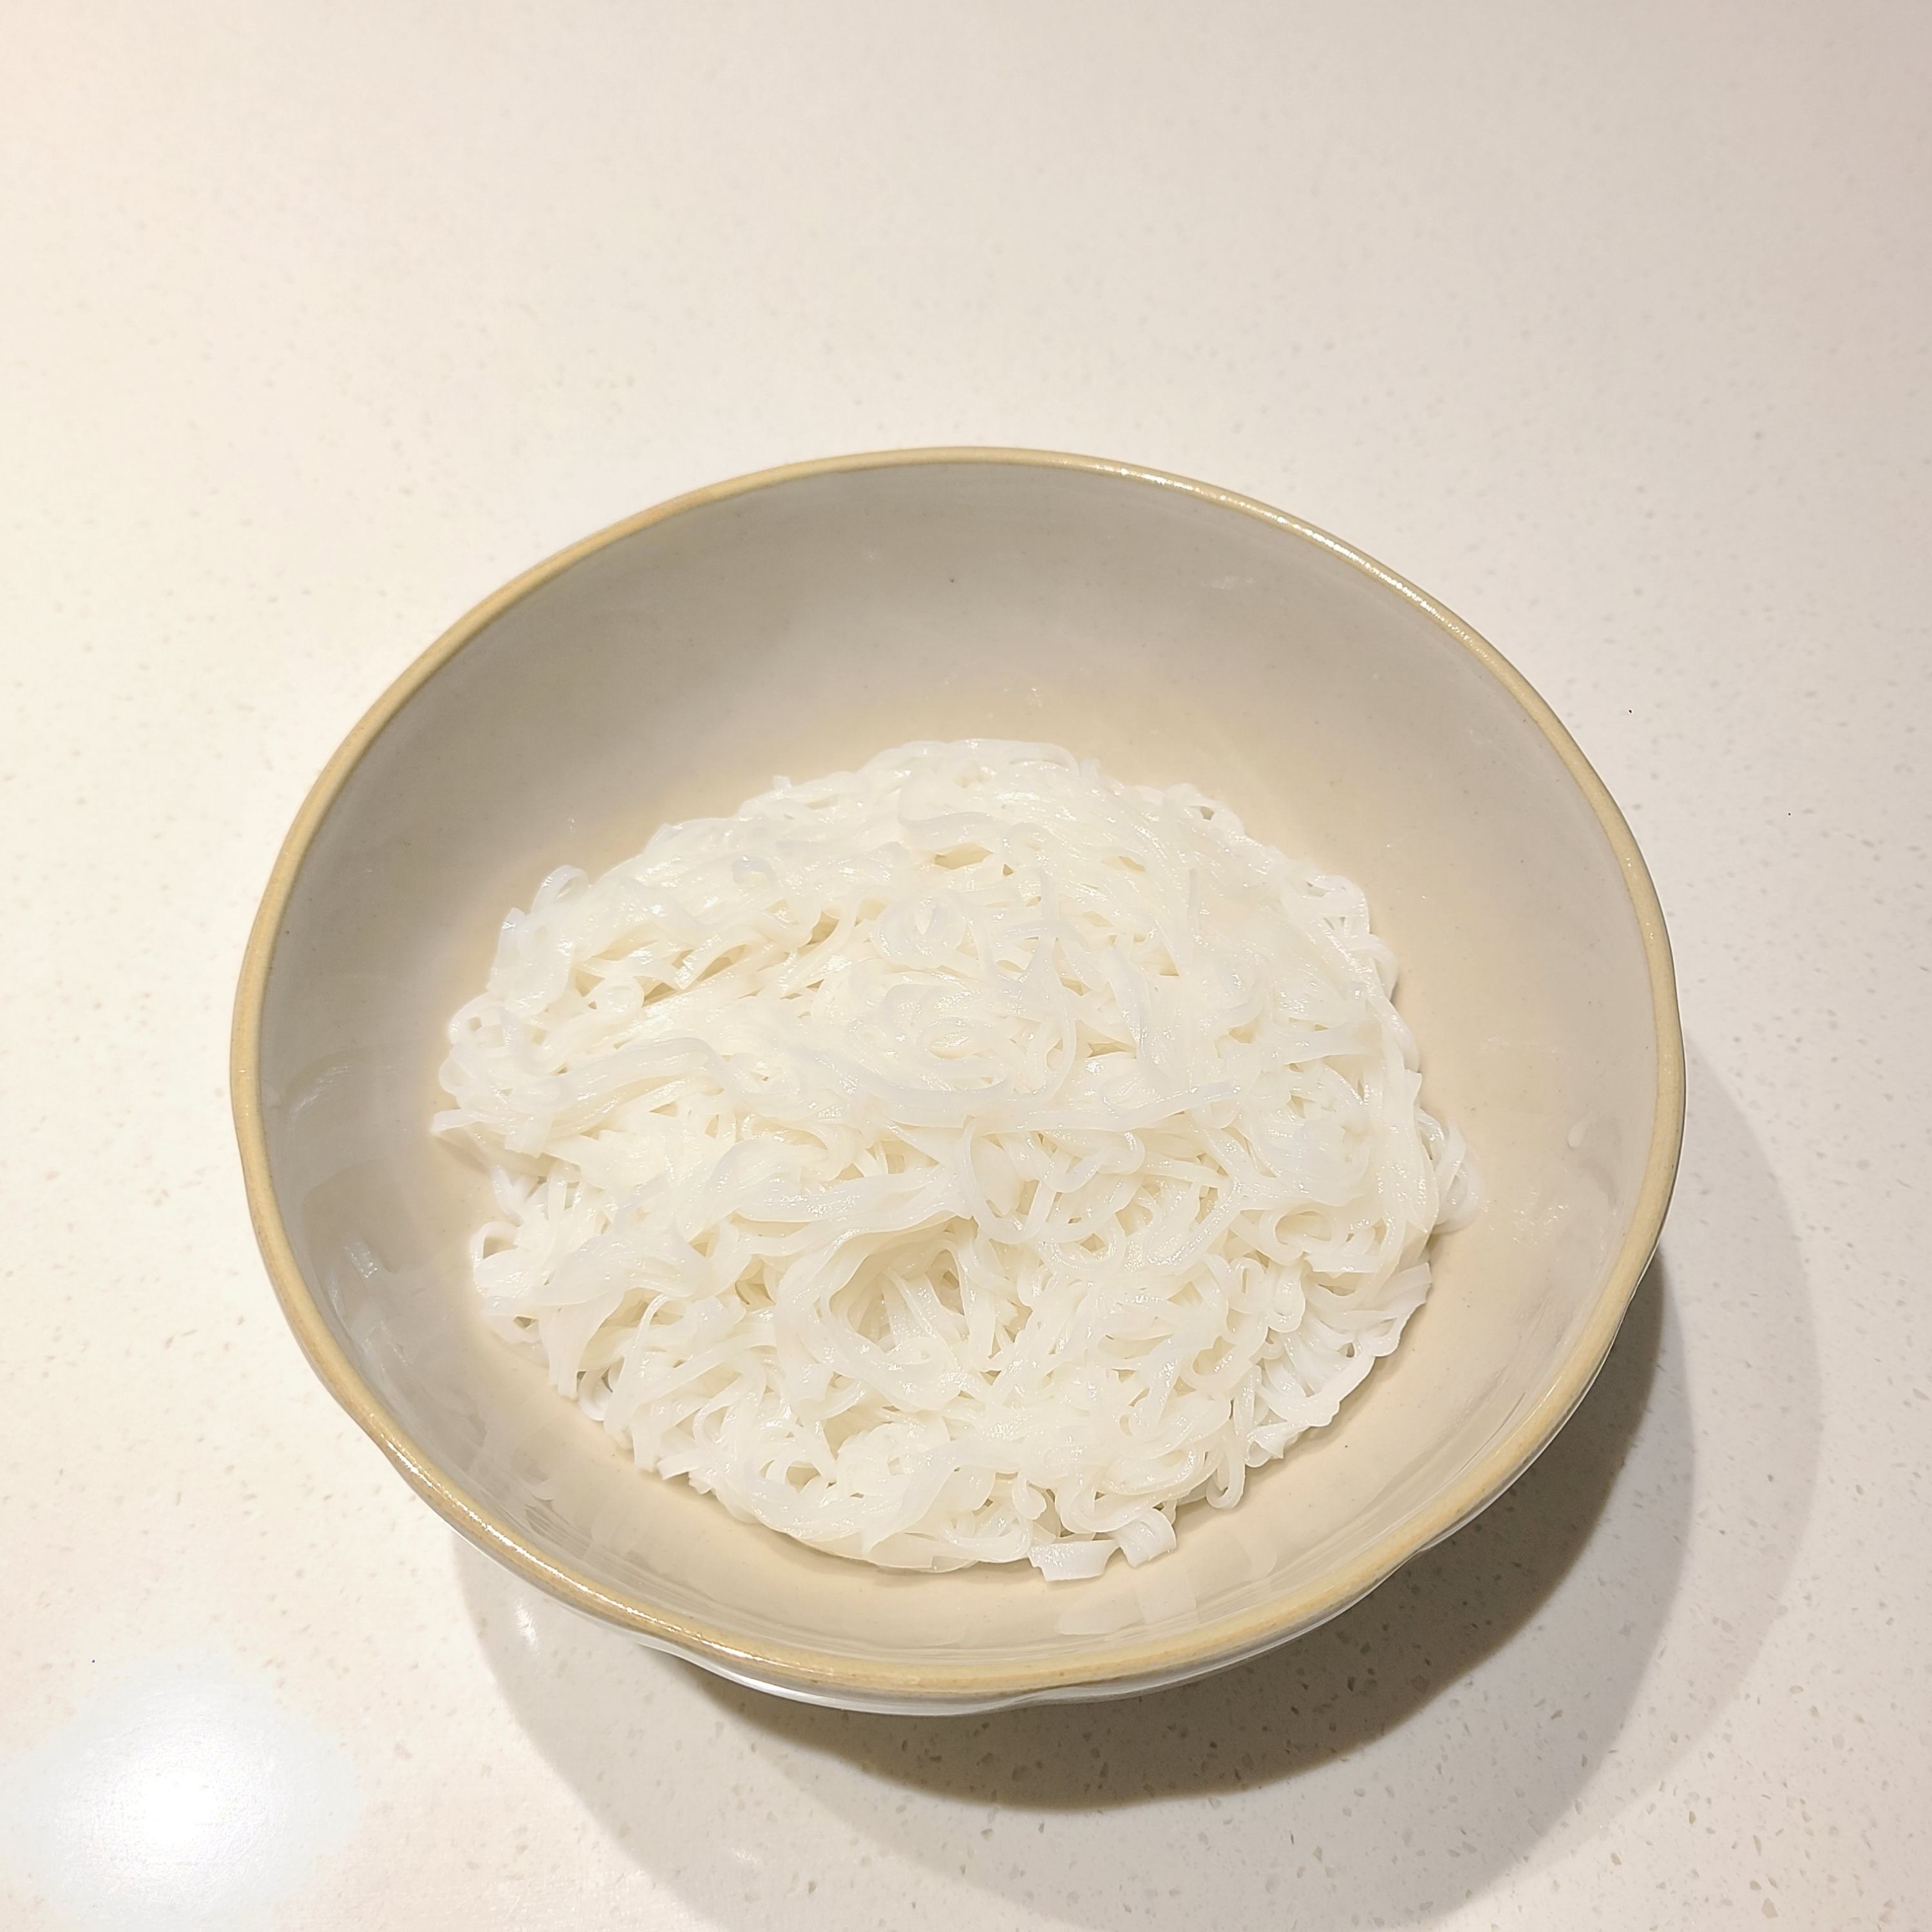 노브랜드-베트남쌀국수간편세트-즉석조리식품-그릇에담아놓은쌀국수면